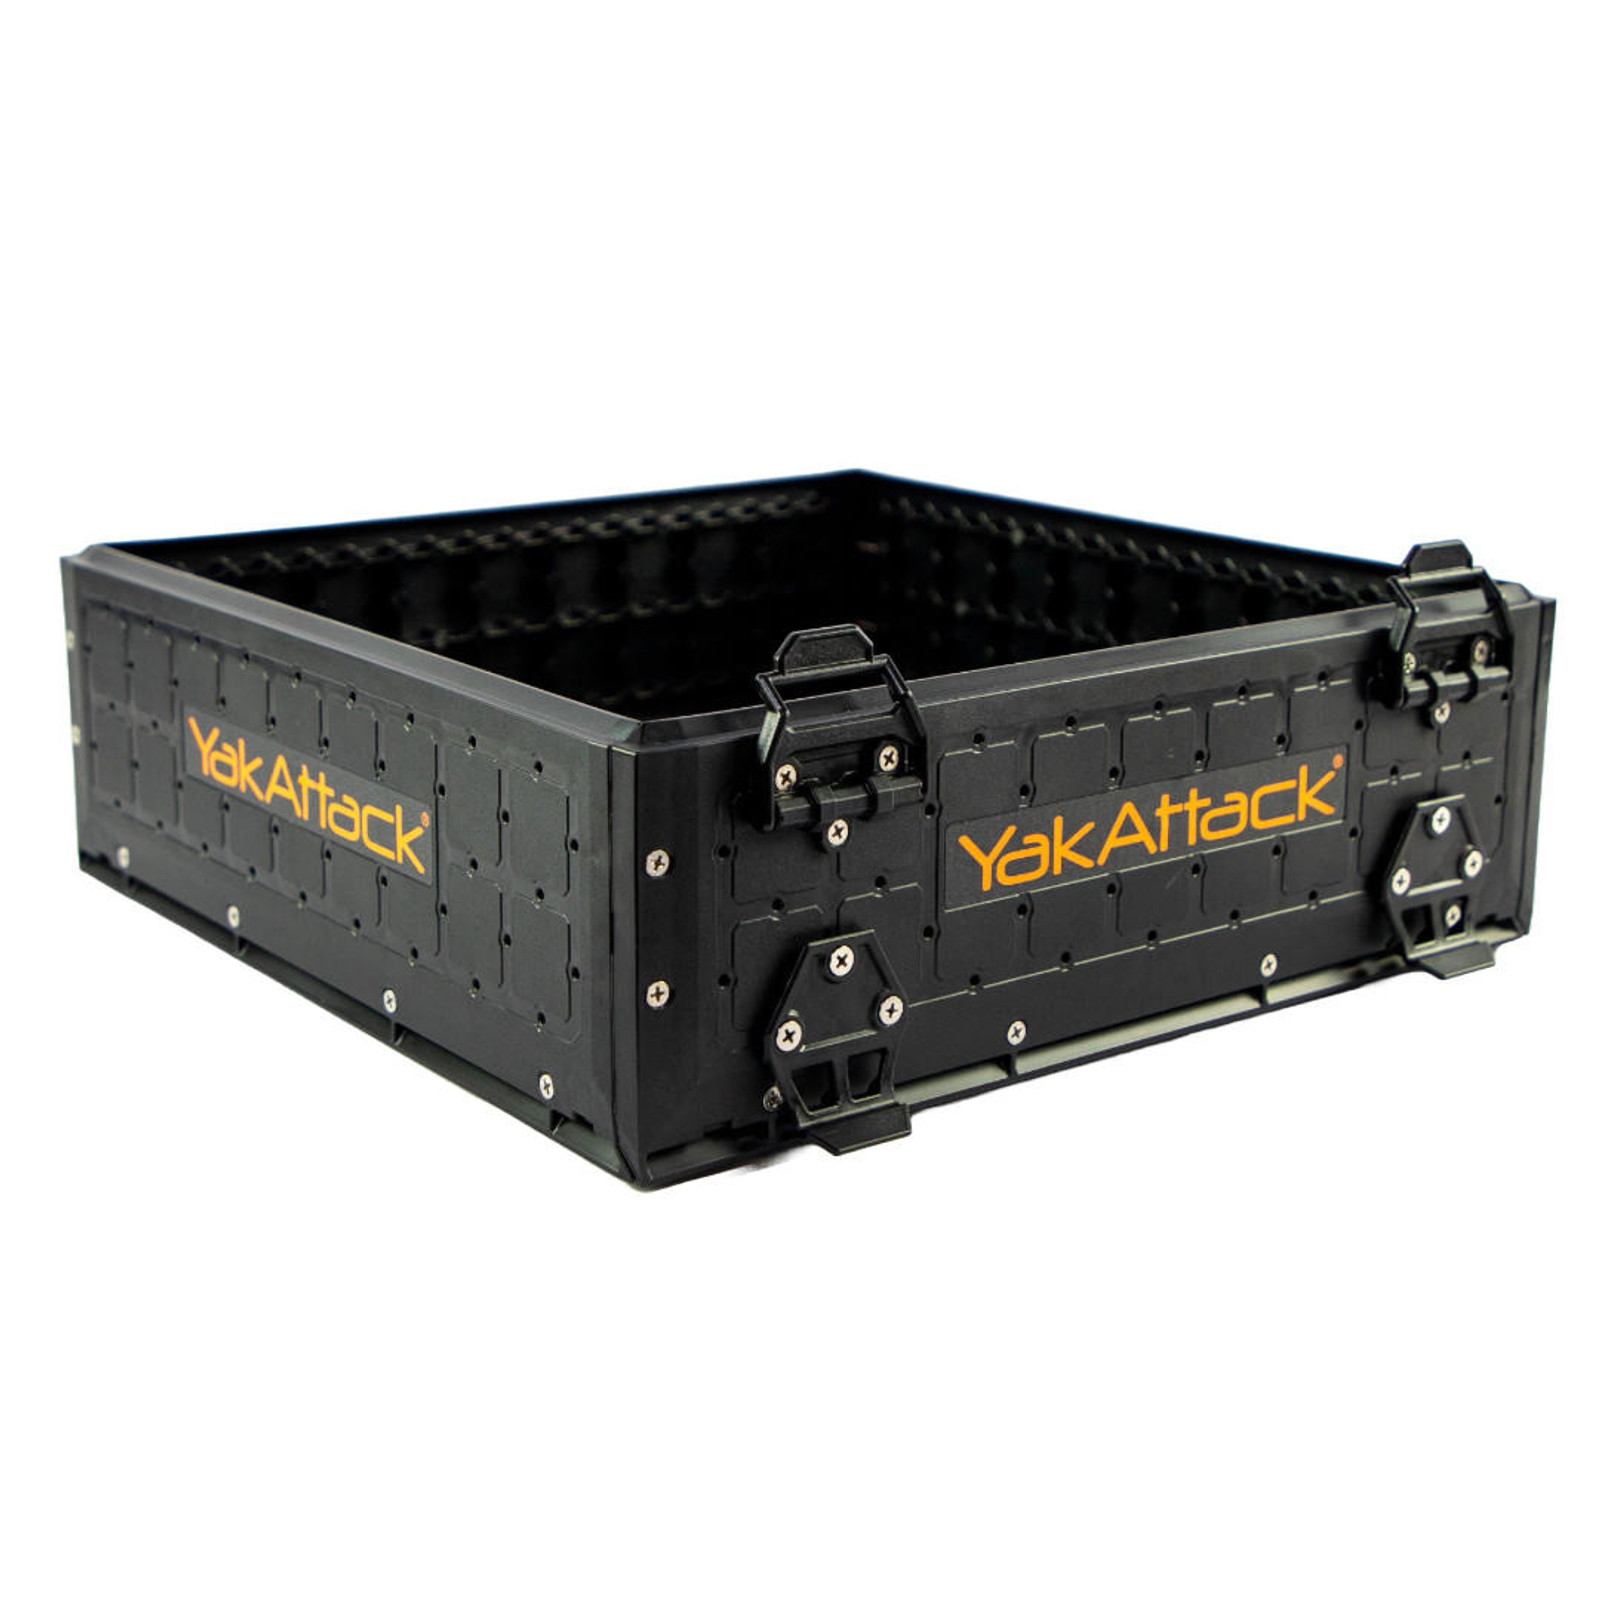  16x16 ShortStak Upgrade Kit for BlackPak Pro, Black 